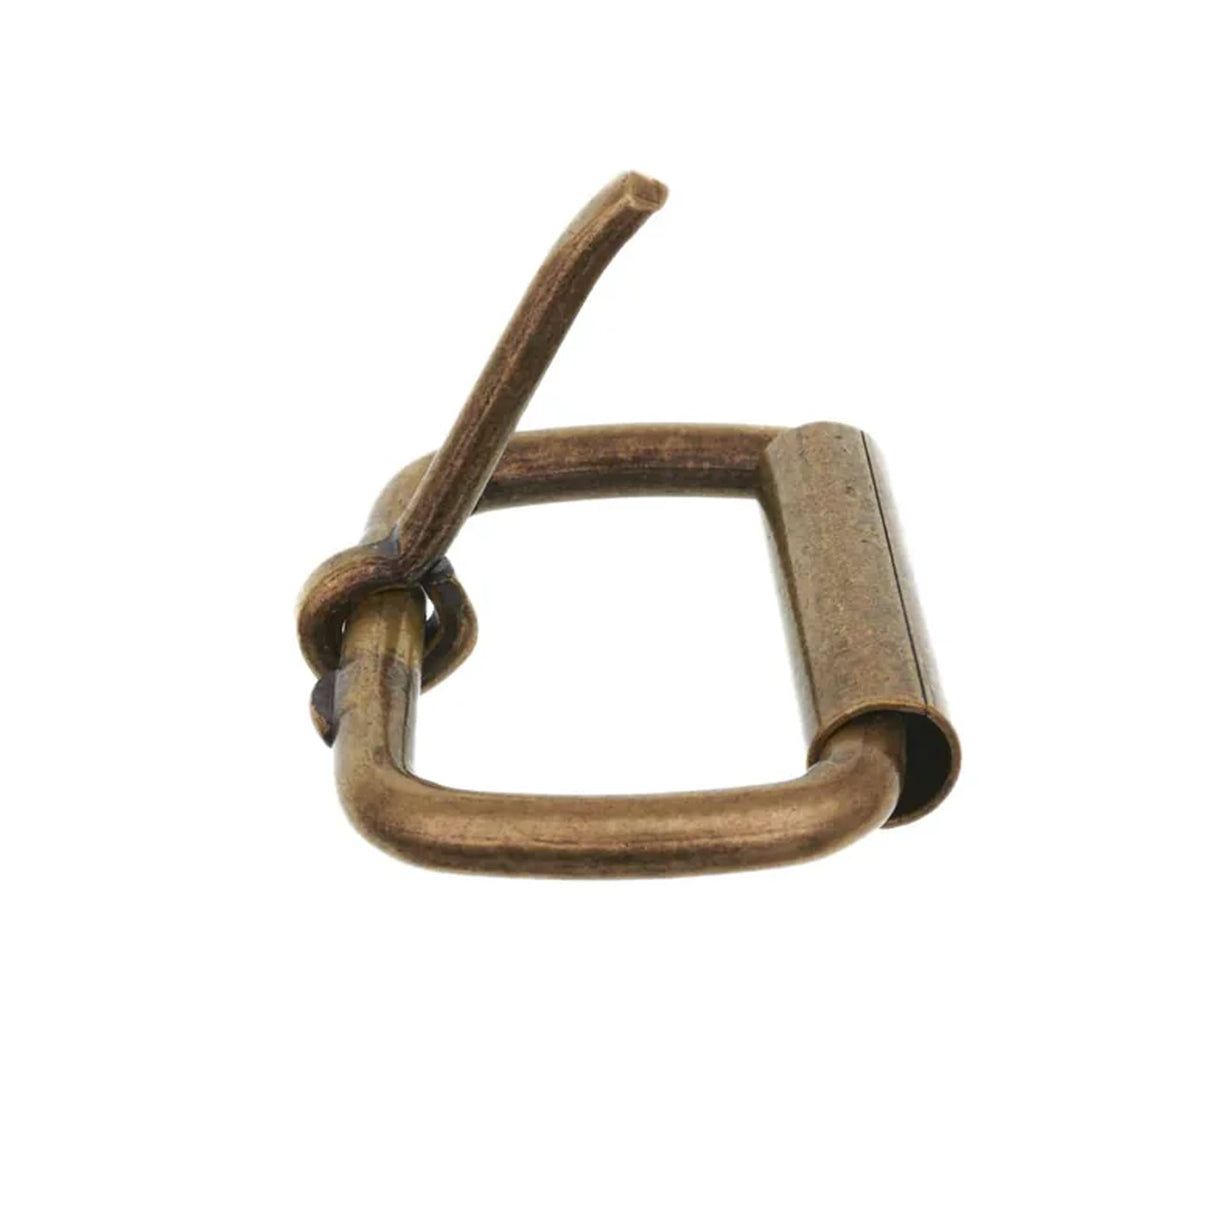 1 1/2" Antique Brass, Heel Bar Roller Buckle, Steel, #C-1477-ANTB